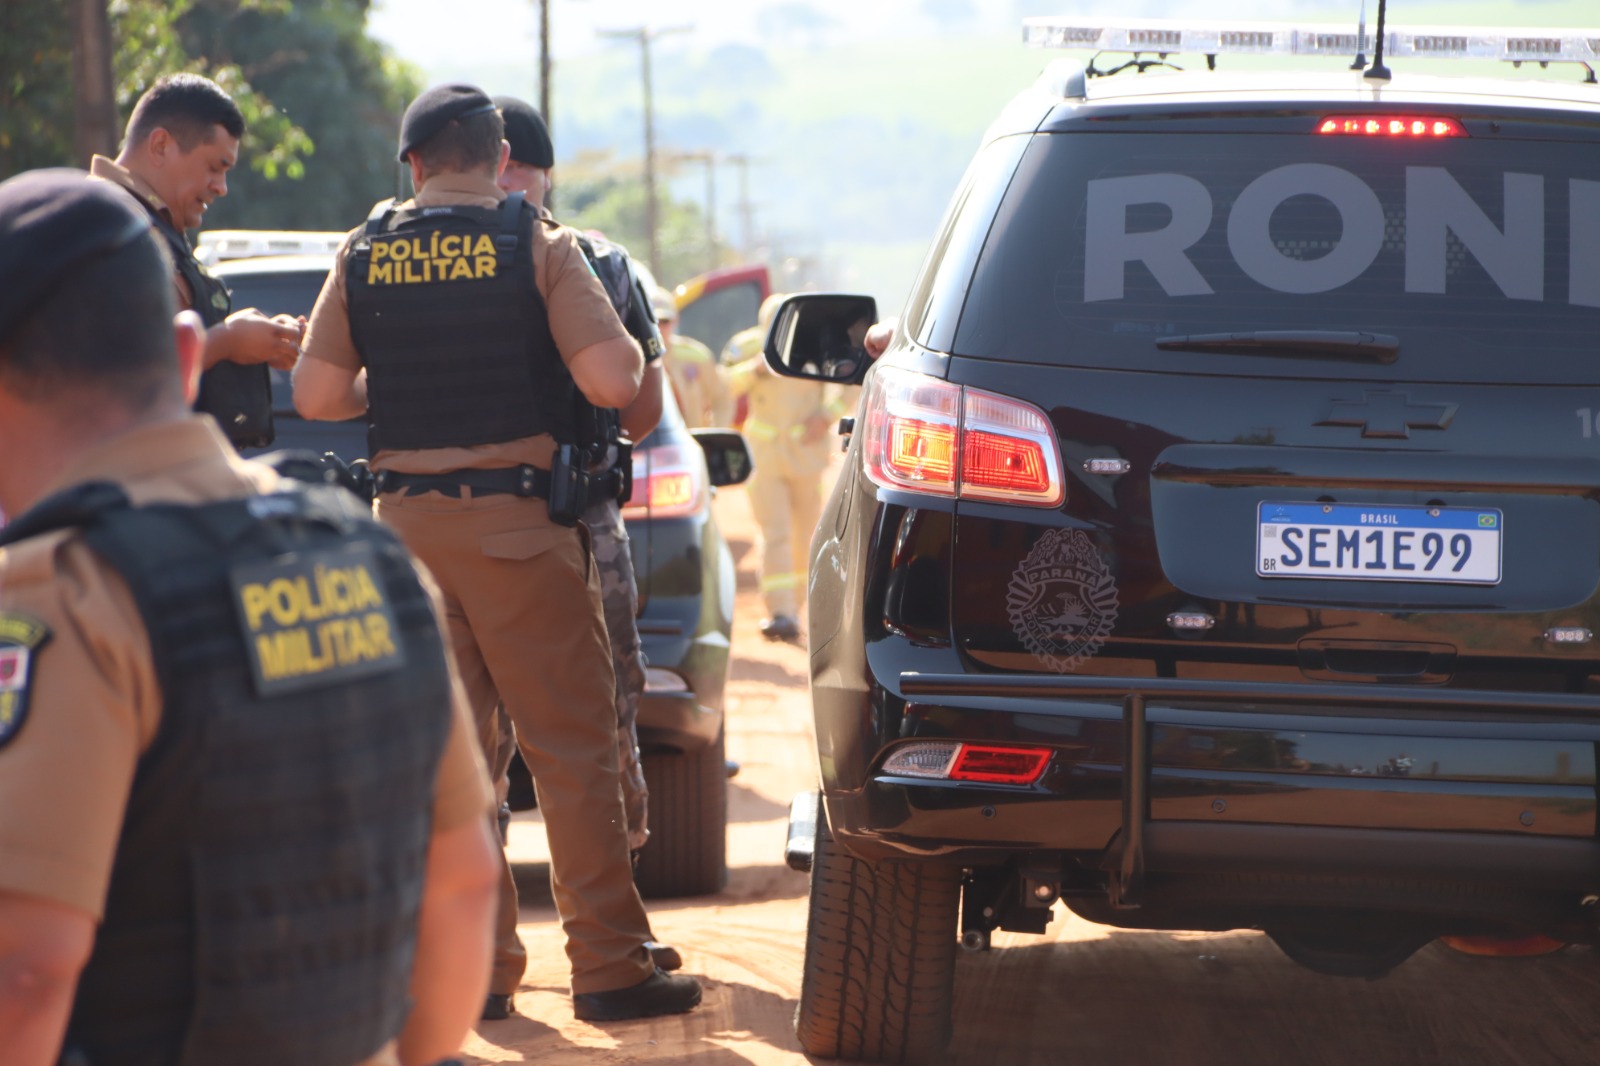 Jornal Ilustrado - Secretário de Segurança atende exigência e há expectativa de fim de sequestro em Ivaté